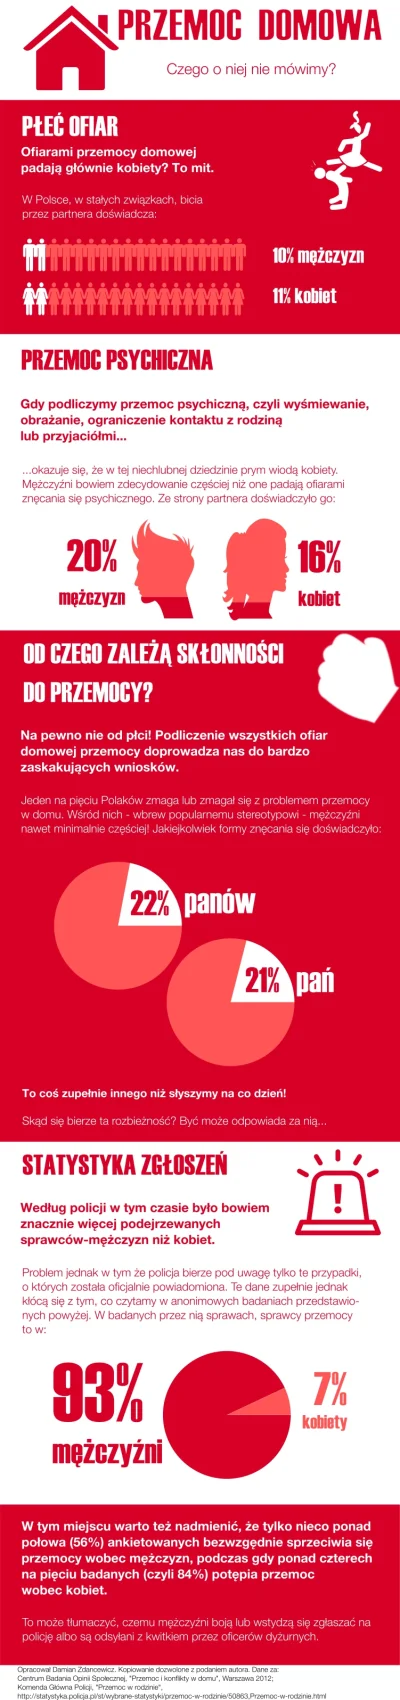 noszu - #infografika #rozowepaski #niebieskiepaski #spoleczenstwo